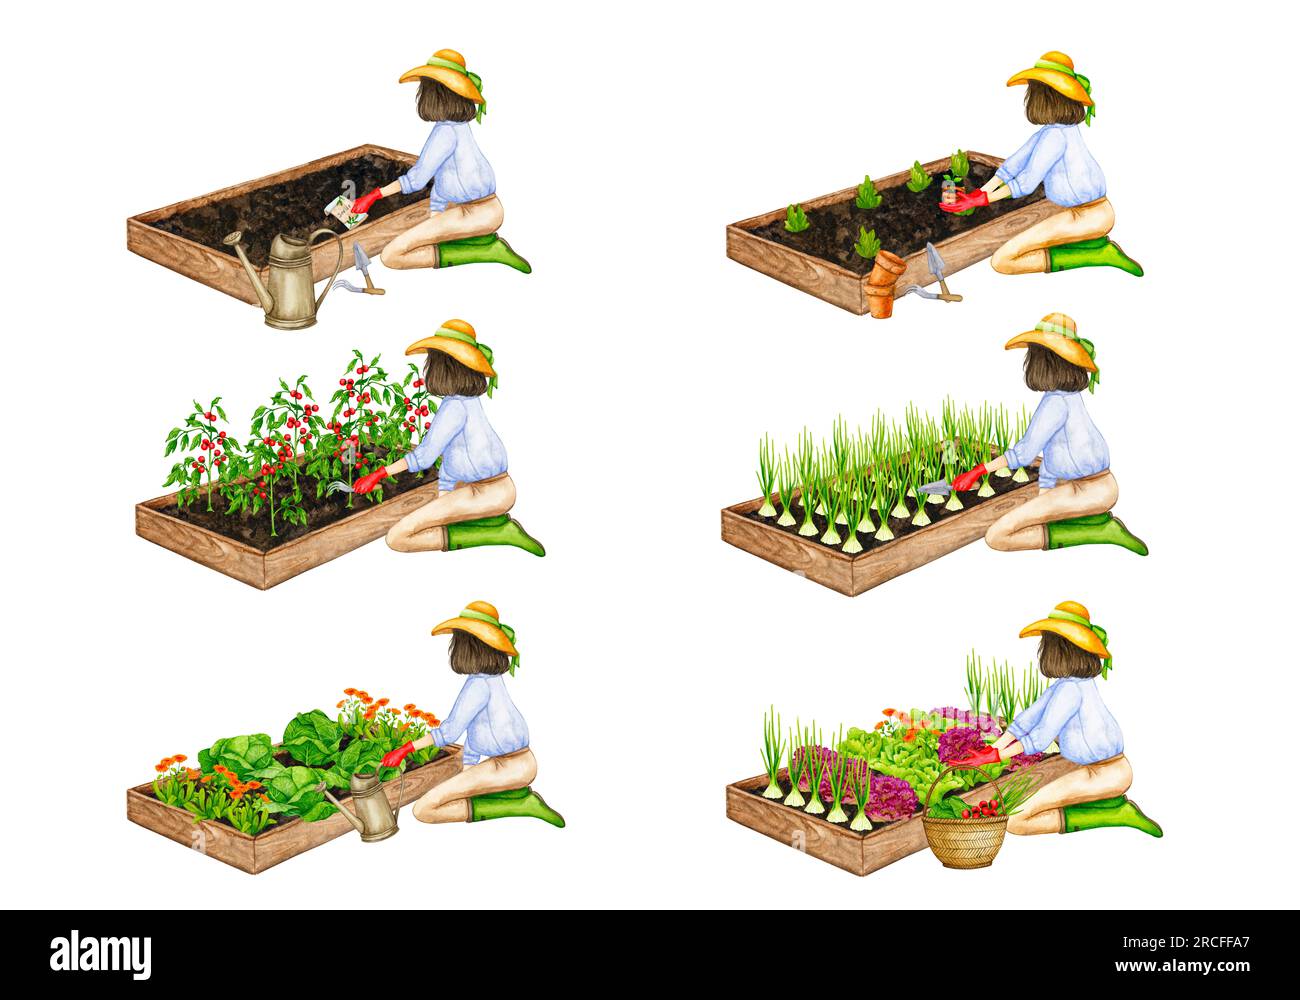 Donna al lavoro in giardino. Una serie di composizioni acquerellate sul tema del giardinaggio, delle piantine primaverili, della coltivazione delle verdure, della raccolta. Foto Stock